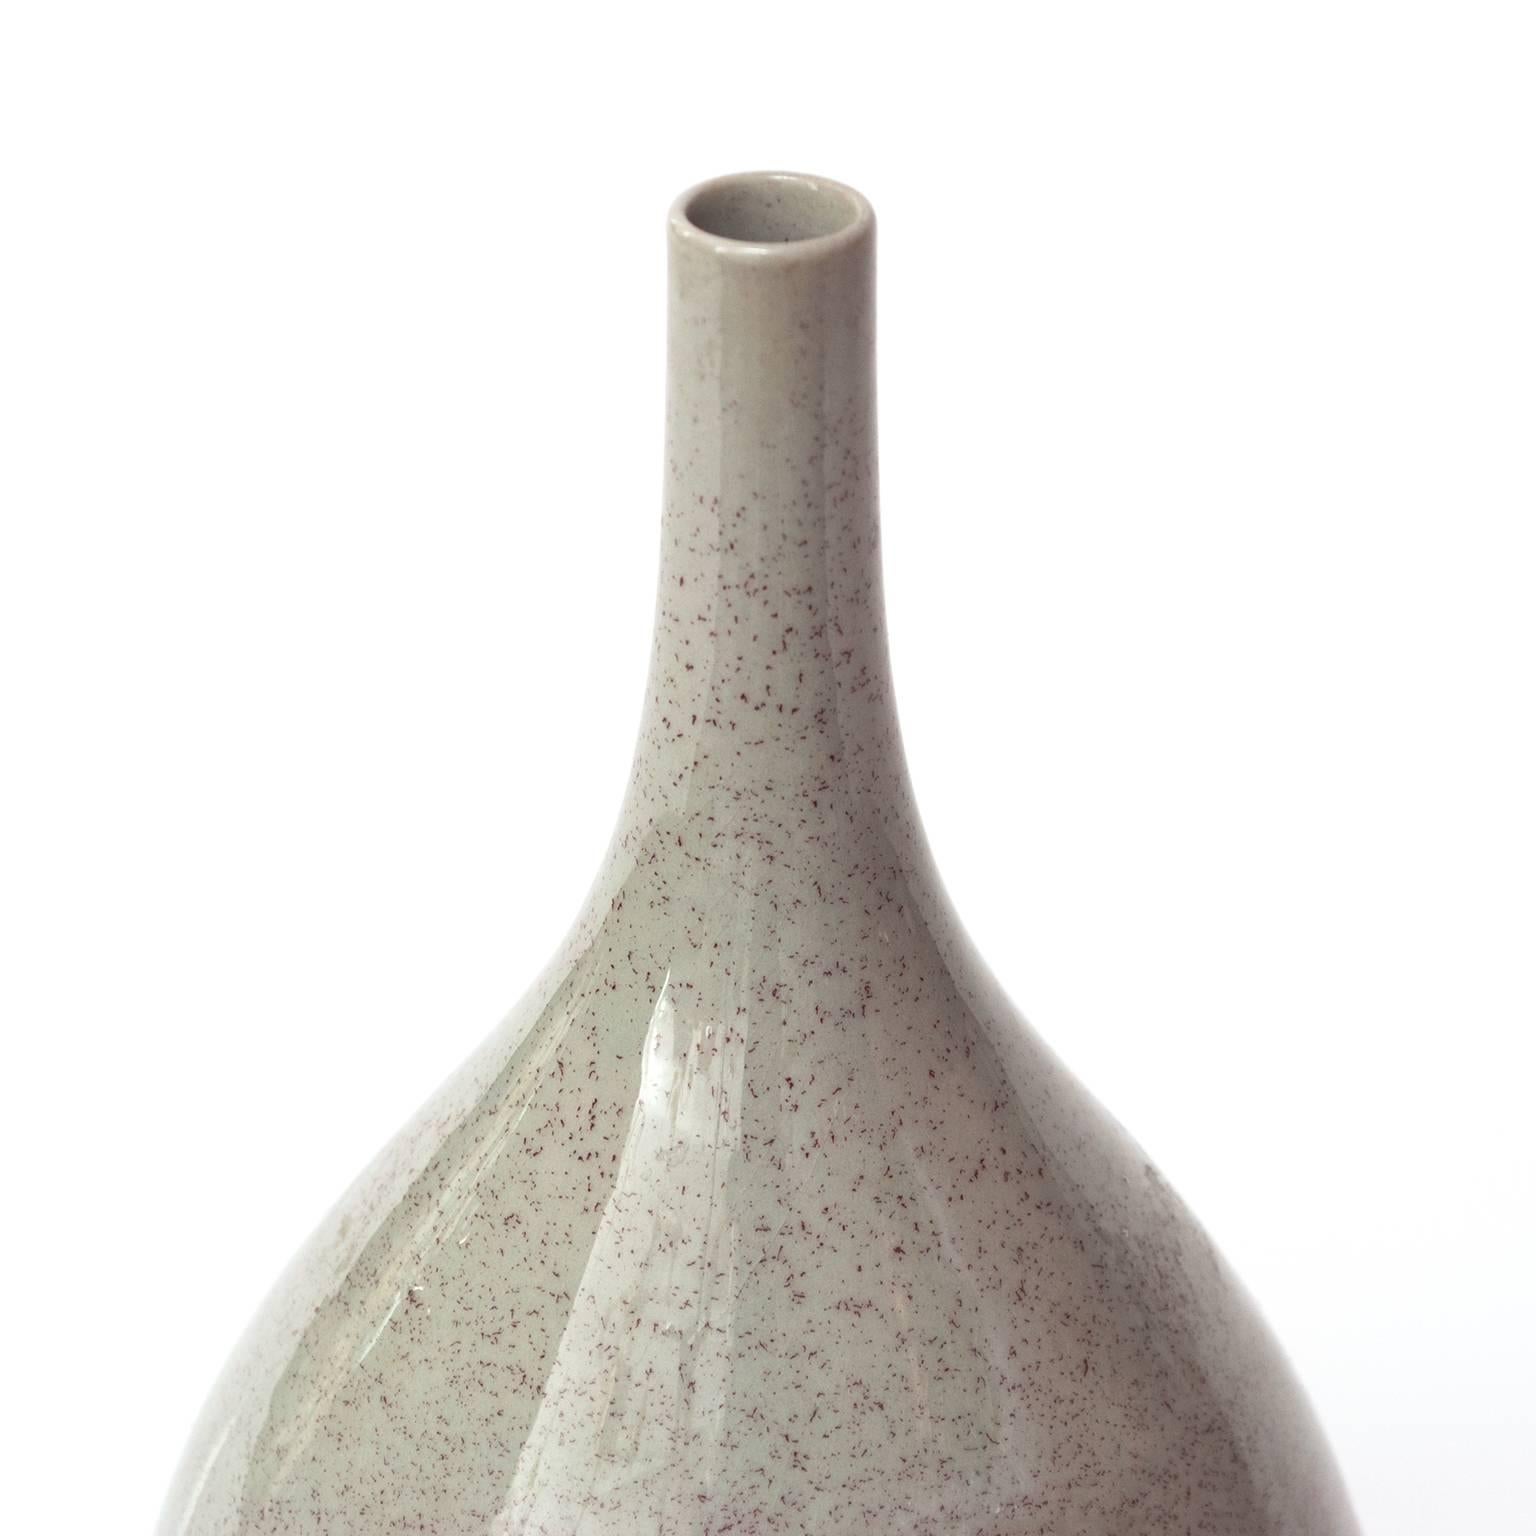 Glazed Carl-Harry Stalhane Scandinavian Modern Speckled Vase for Rorstrand Studio